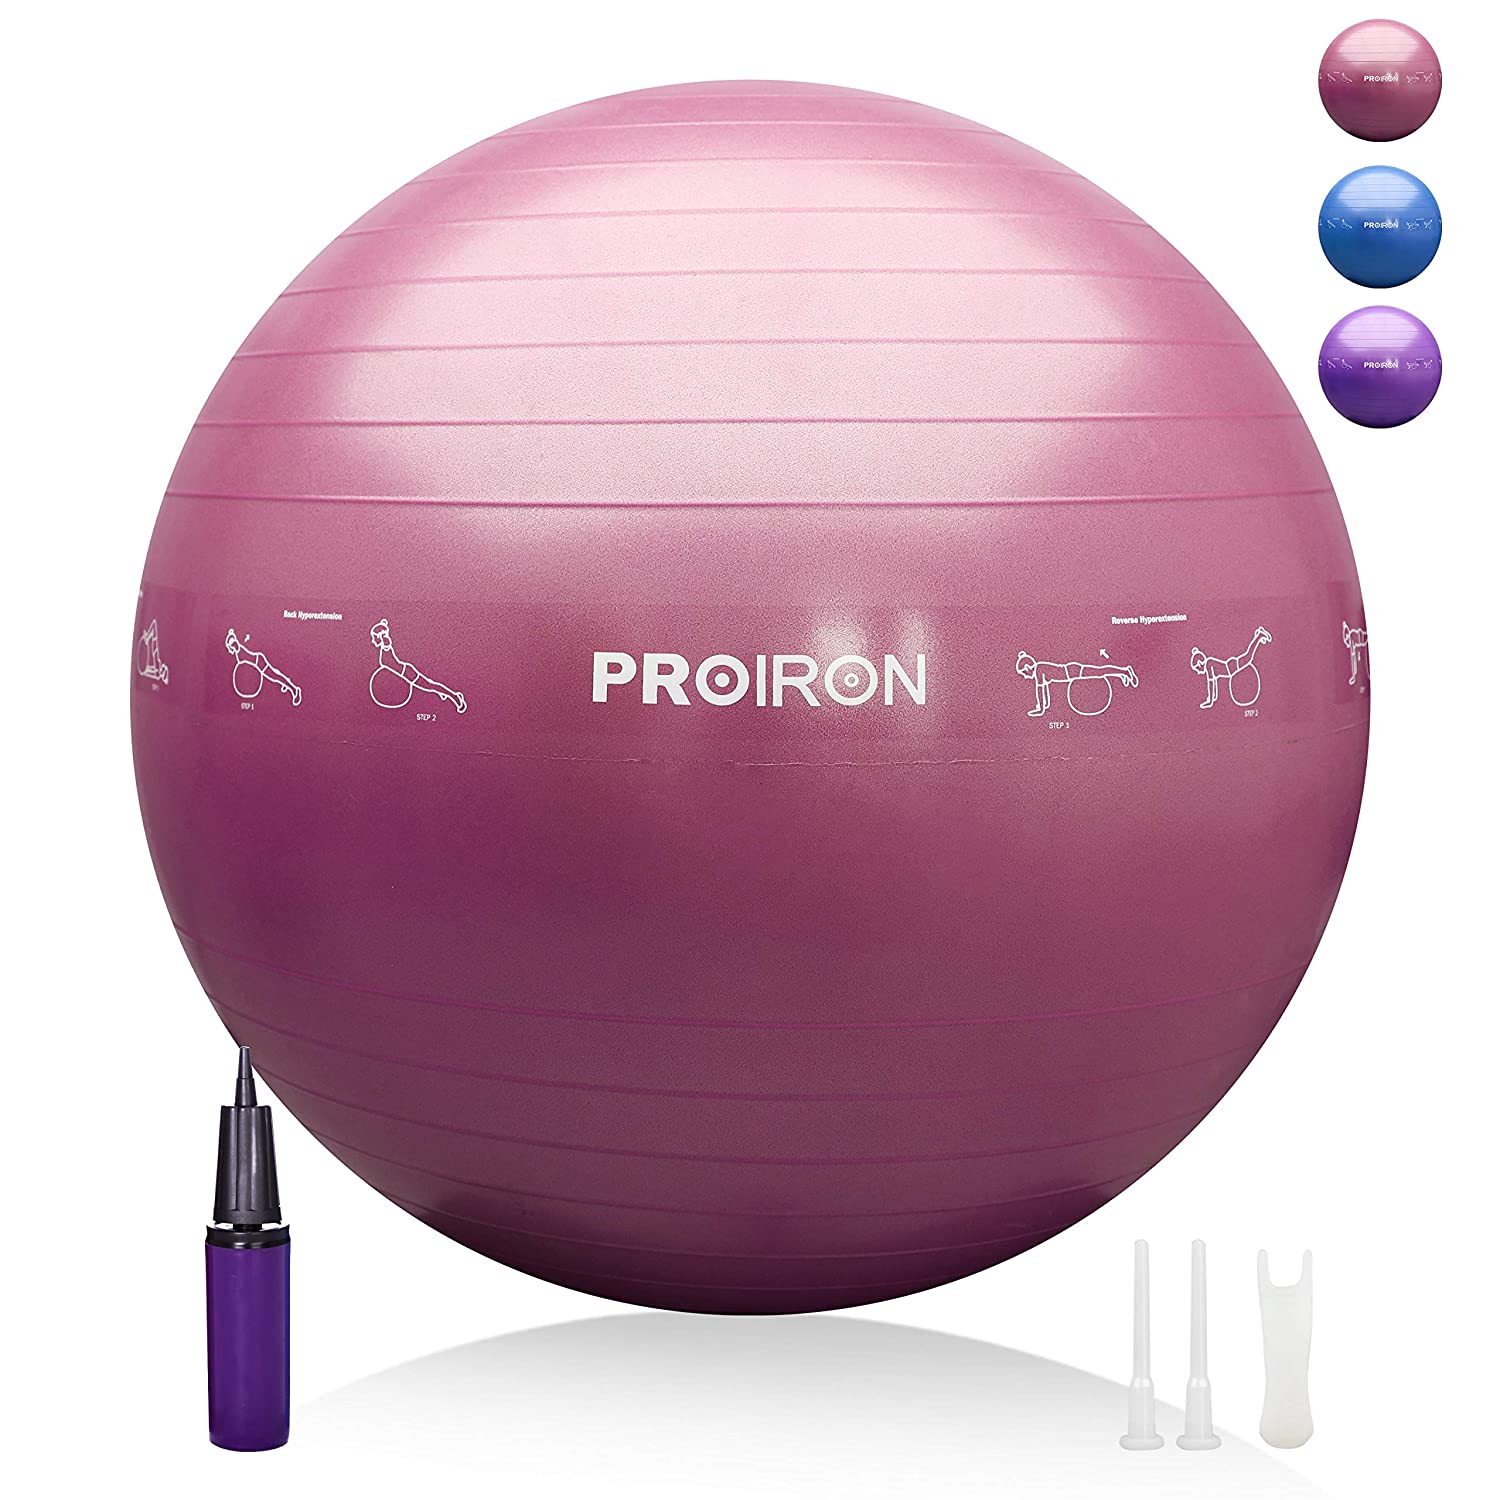 Proiron Printed Gym Ball